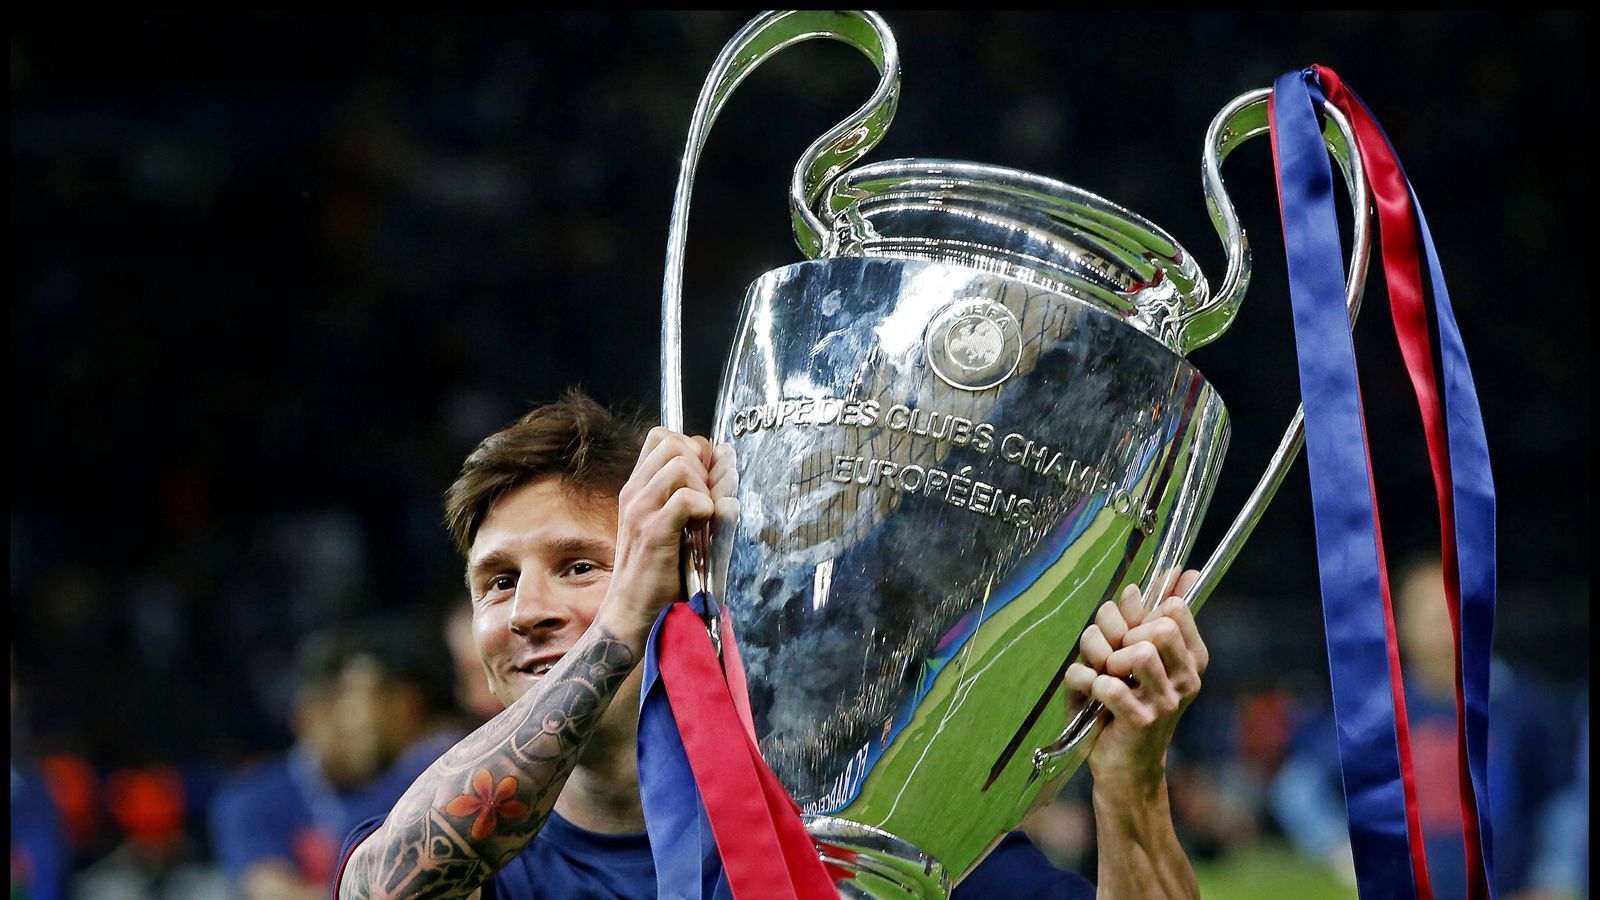 
                <strong>2009: Triple-Sieger </strong><br>
                In der Saison 2008/09 gewinnt Messi gleich drei Titel: Mit dem FC Barcelona wird er sowohl Champions-League-Sieger, spanischer Meister und spanischer Pokalsieger. Der Pokalsieg in der Copa del Rey ist für Messi dabei eine Premiere in seiner Karriere.  
              